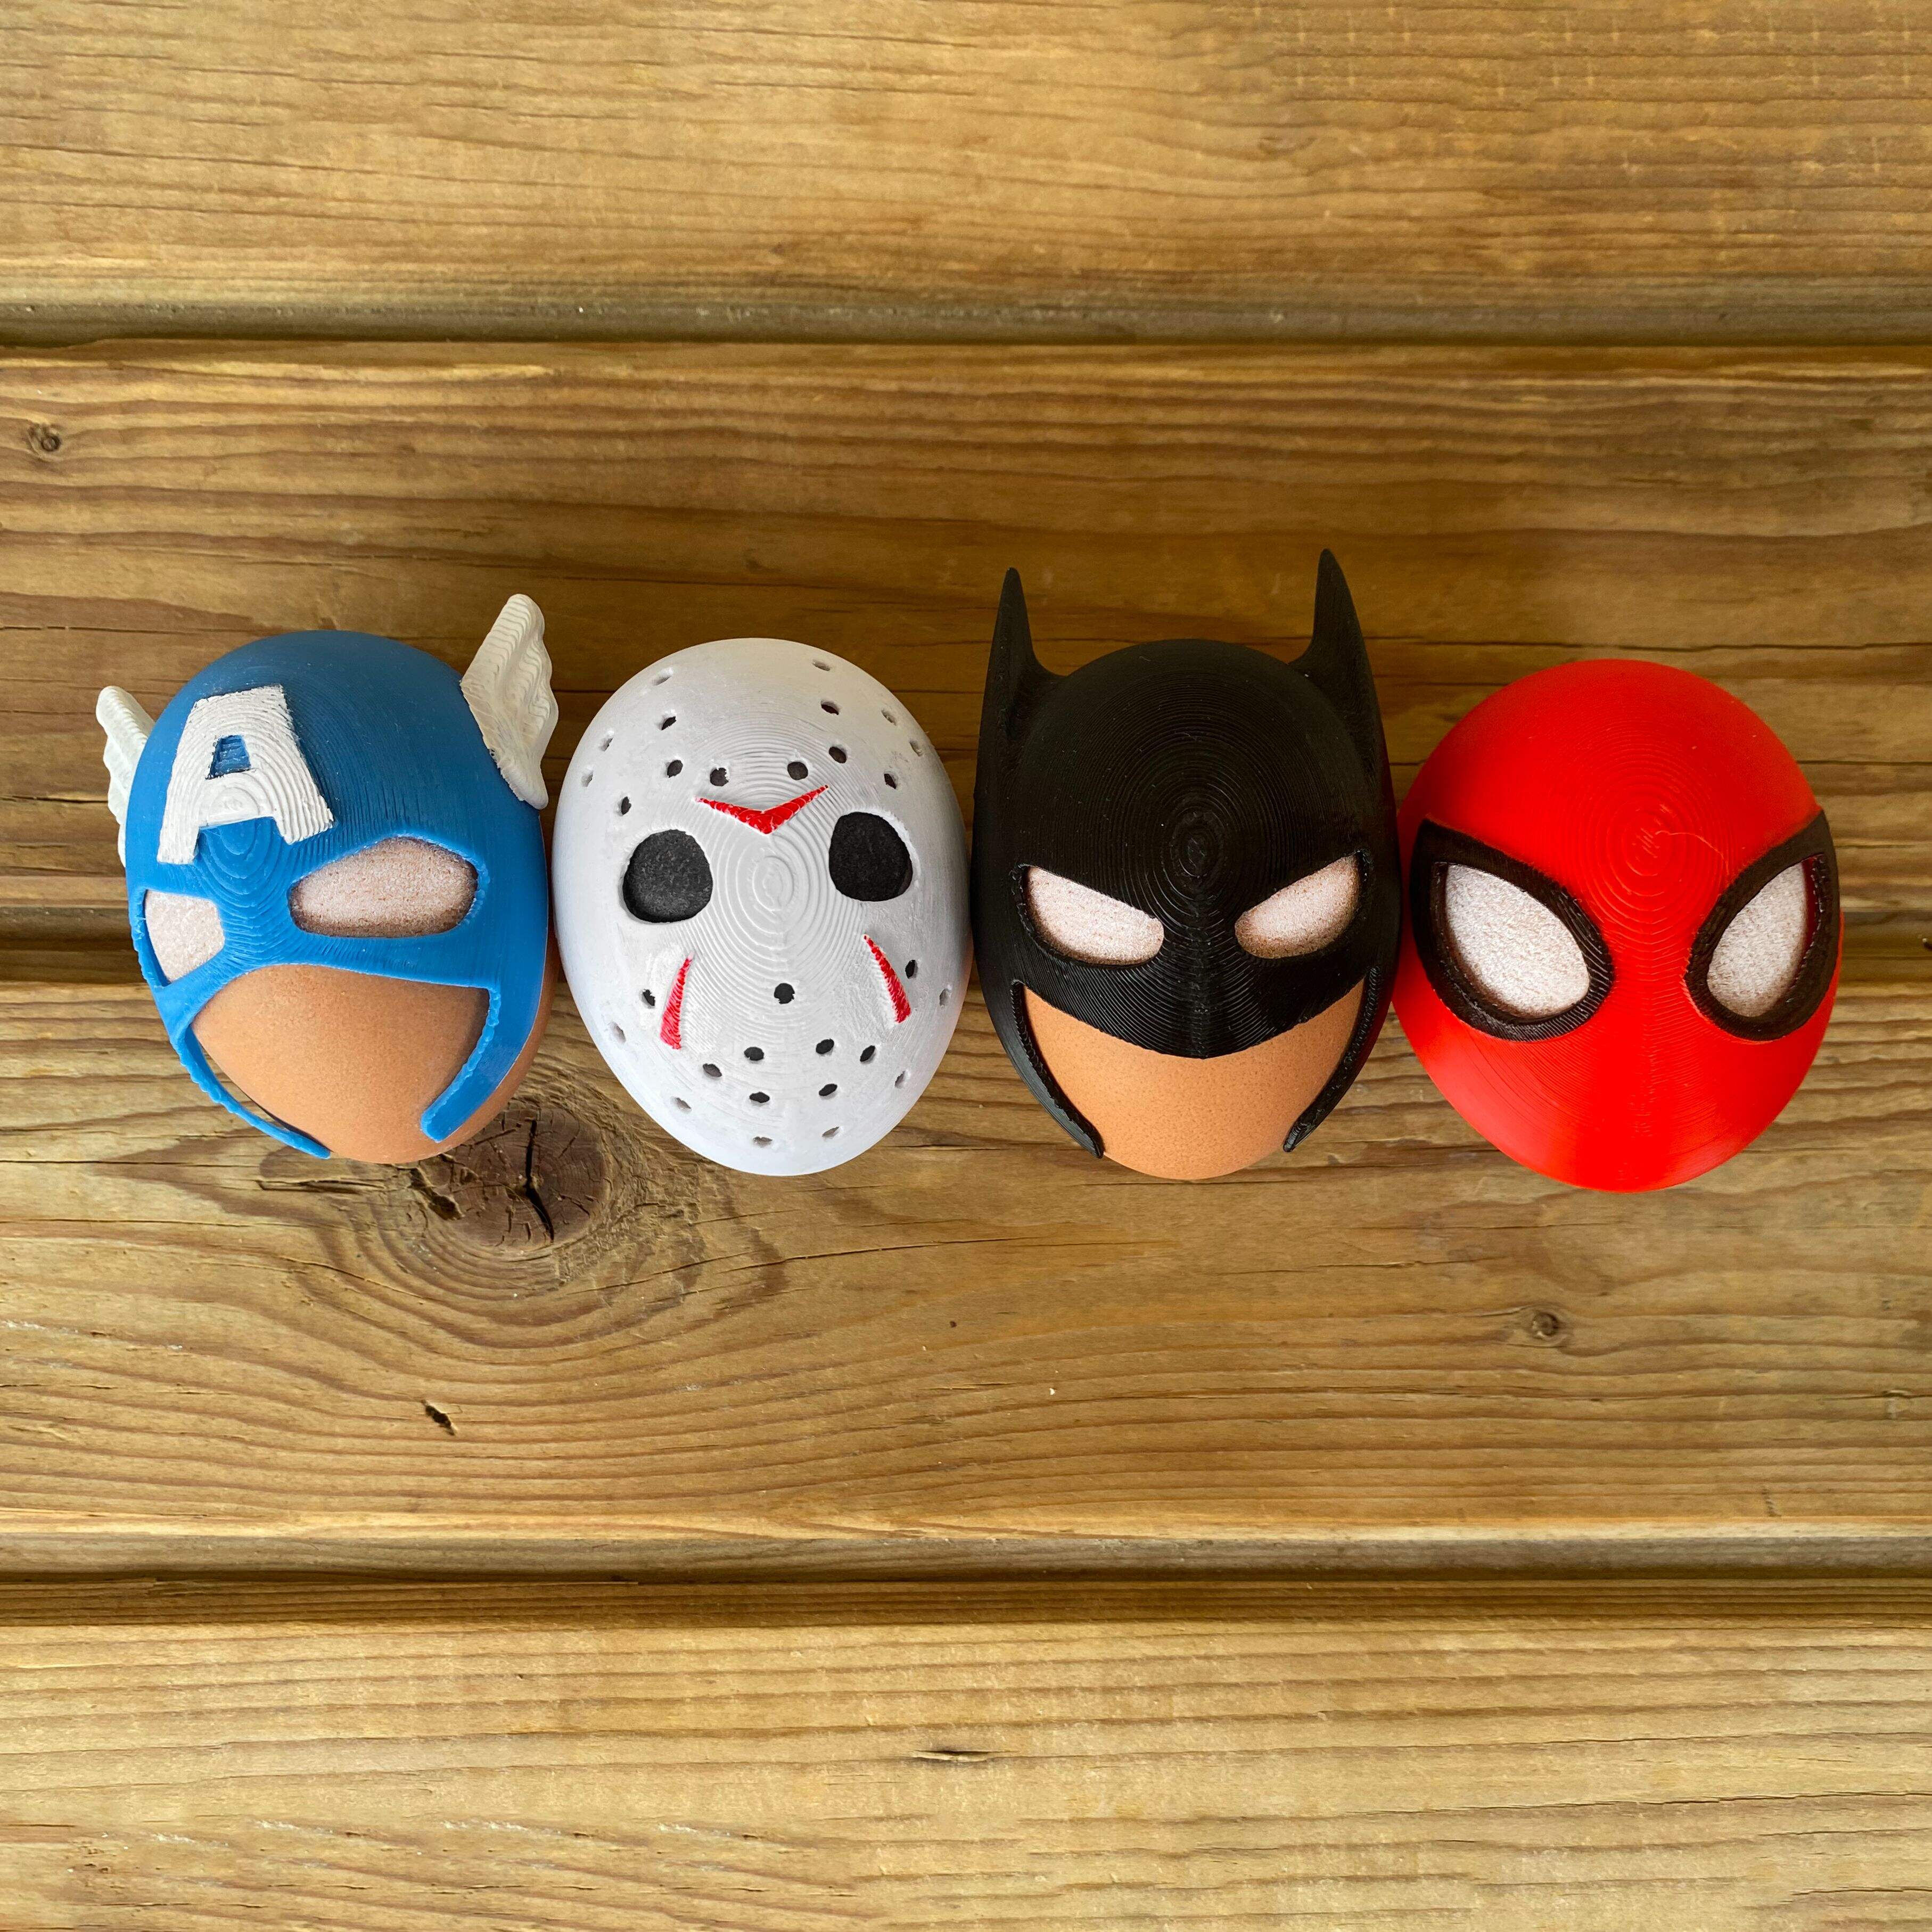 Egg masks